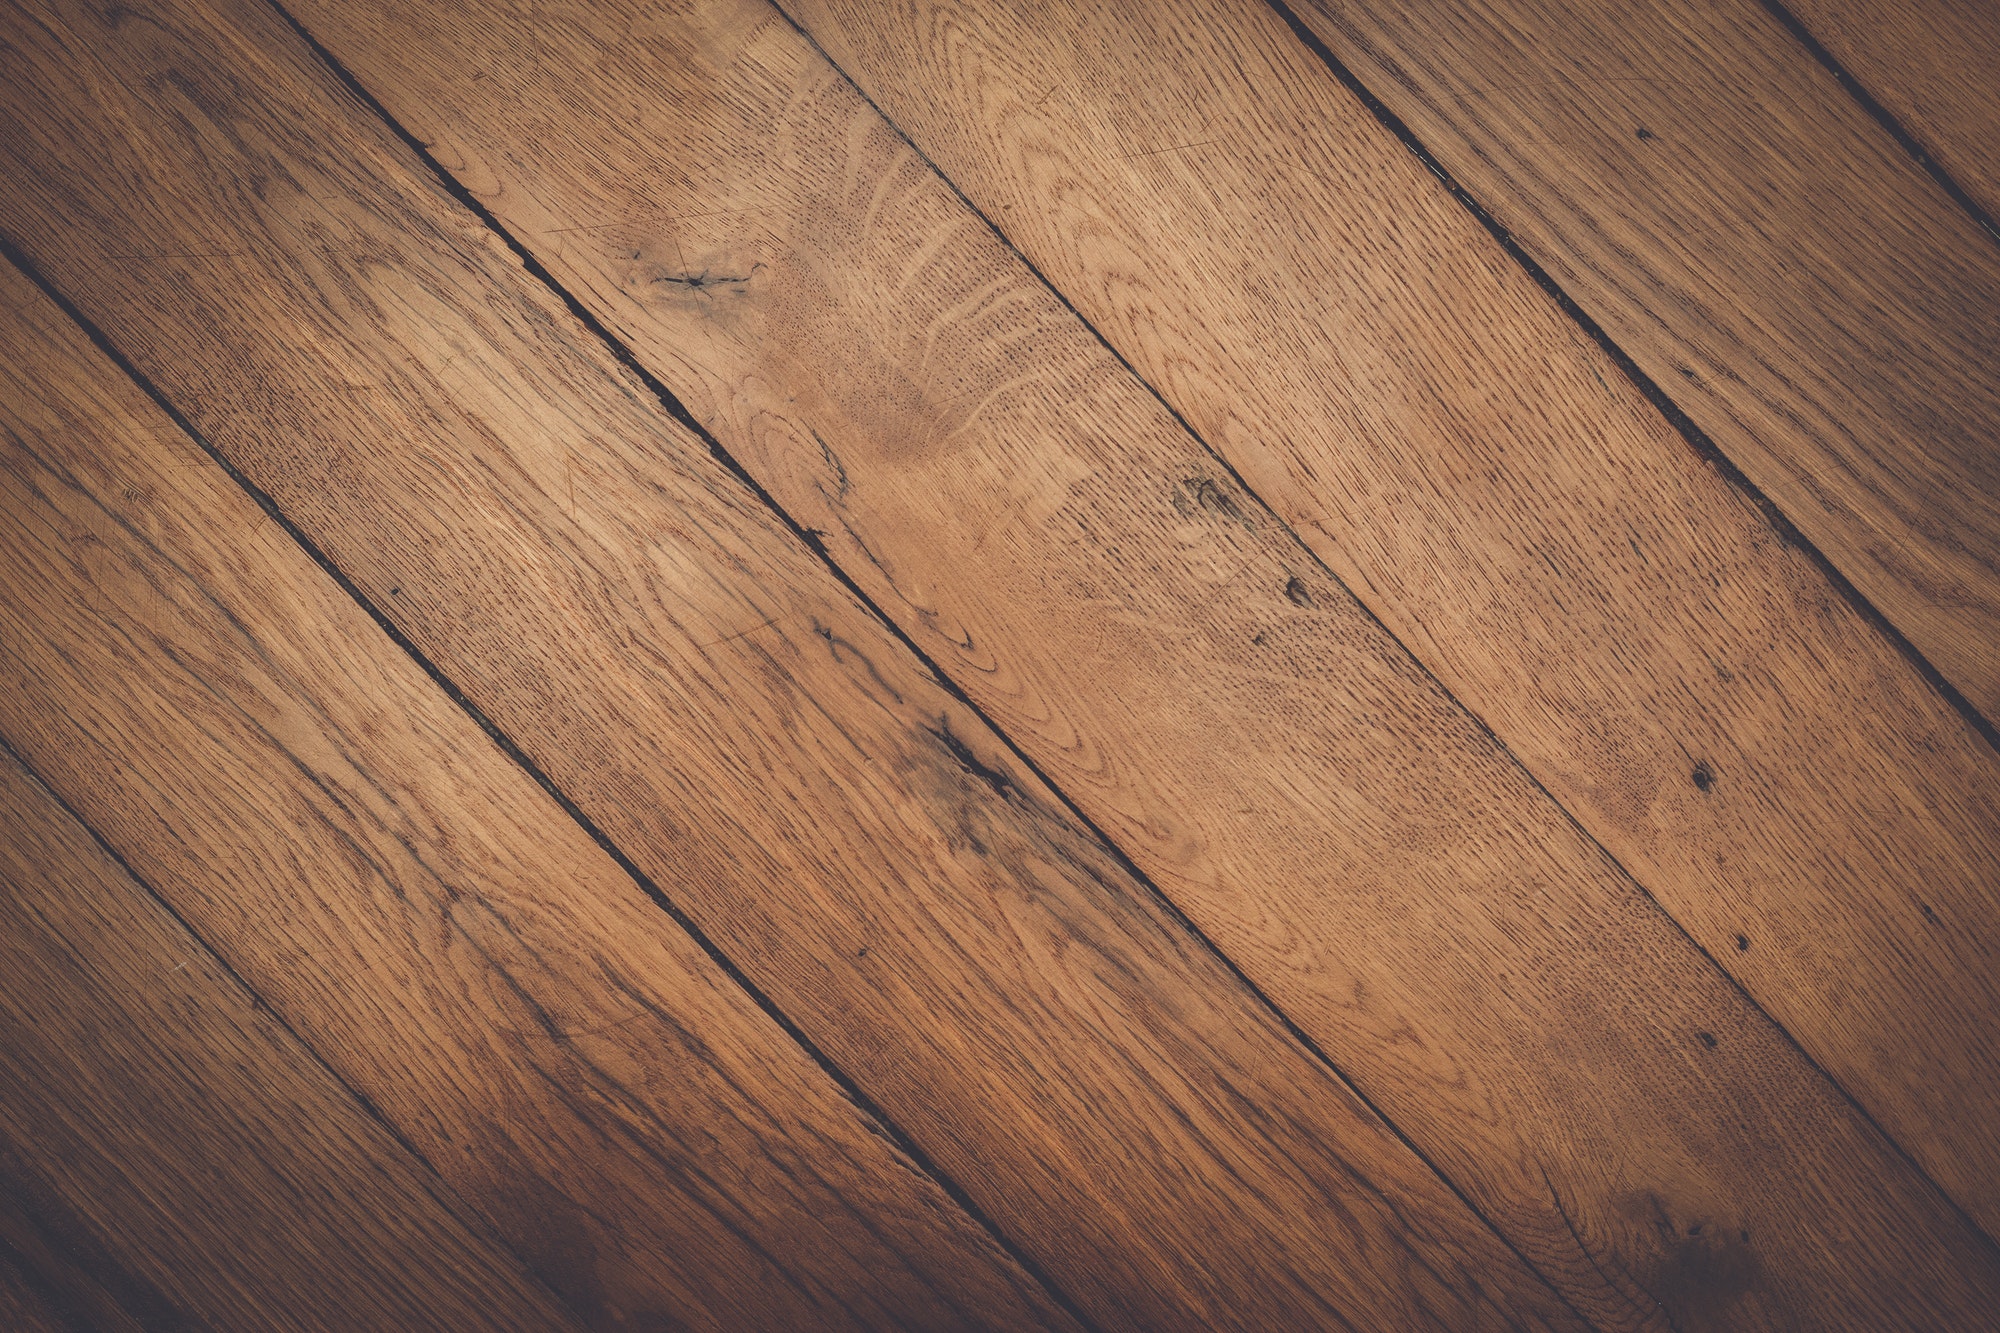 Flooring To Repair, Dark Brown Wood Background Stock Image - Image of  industry, bokeh: 89659771